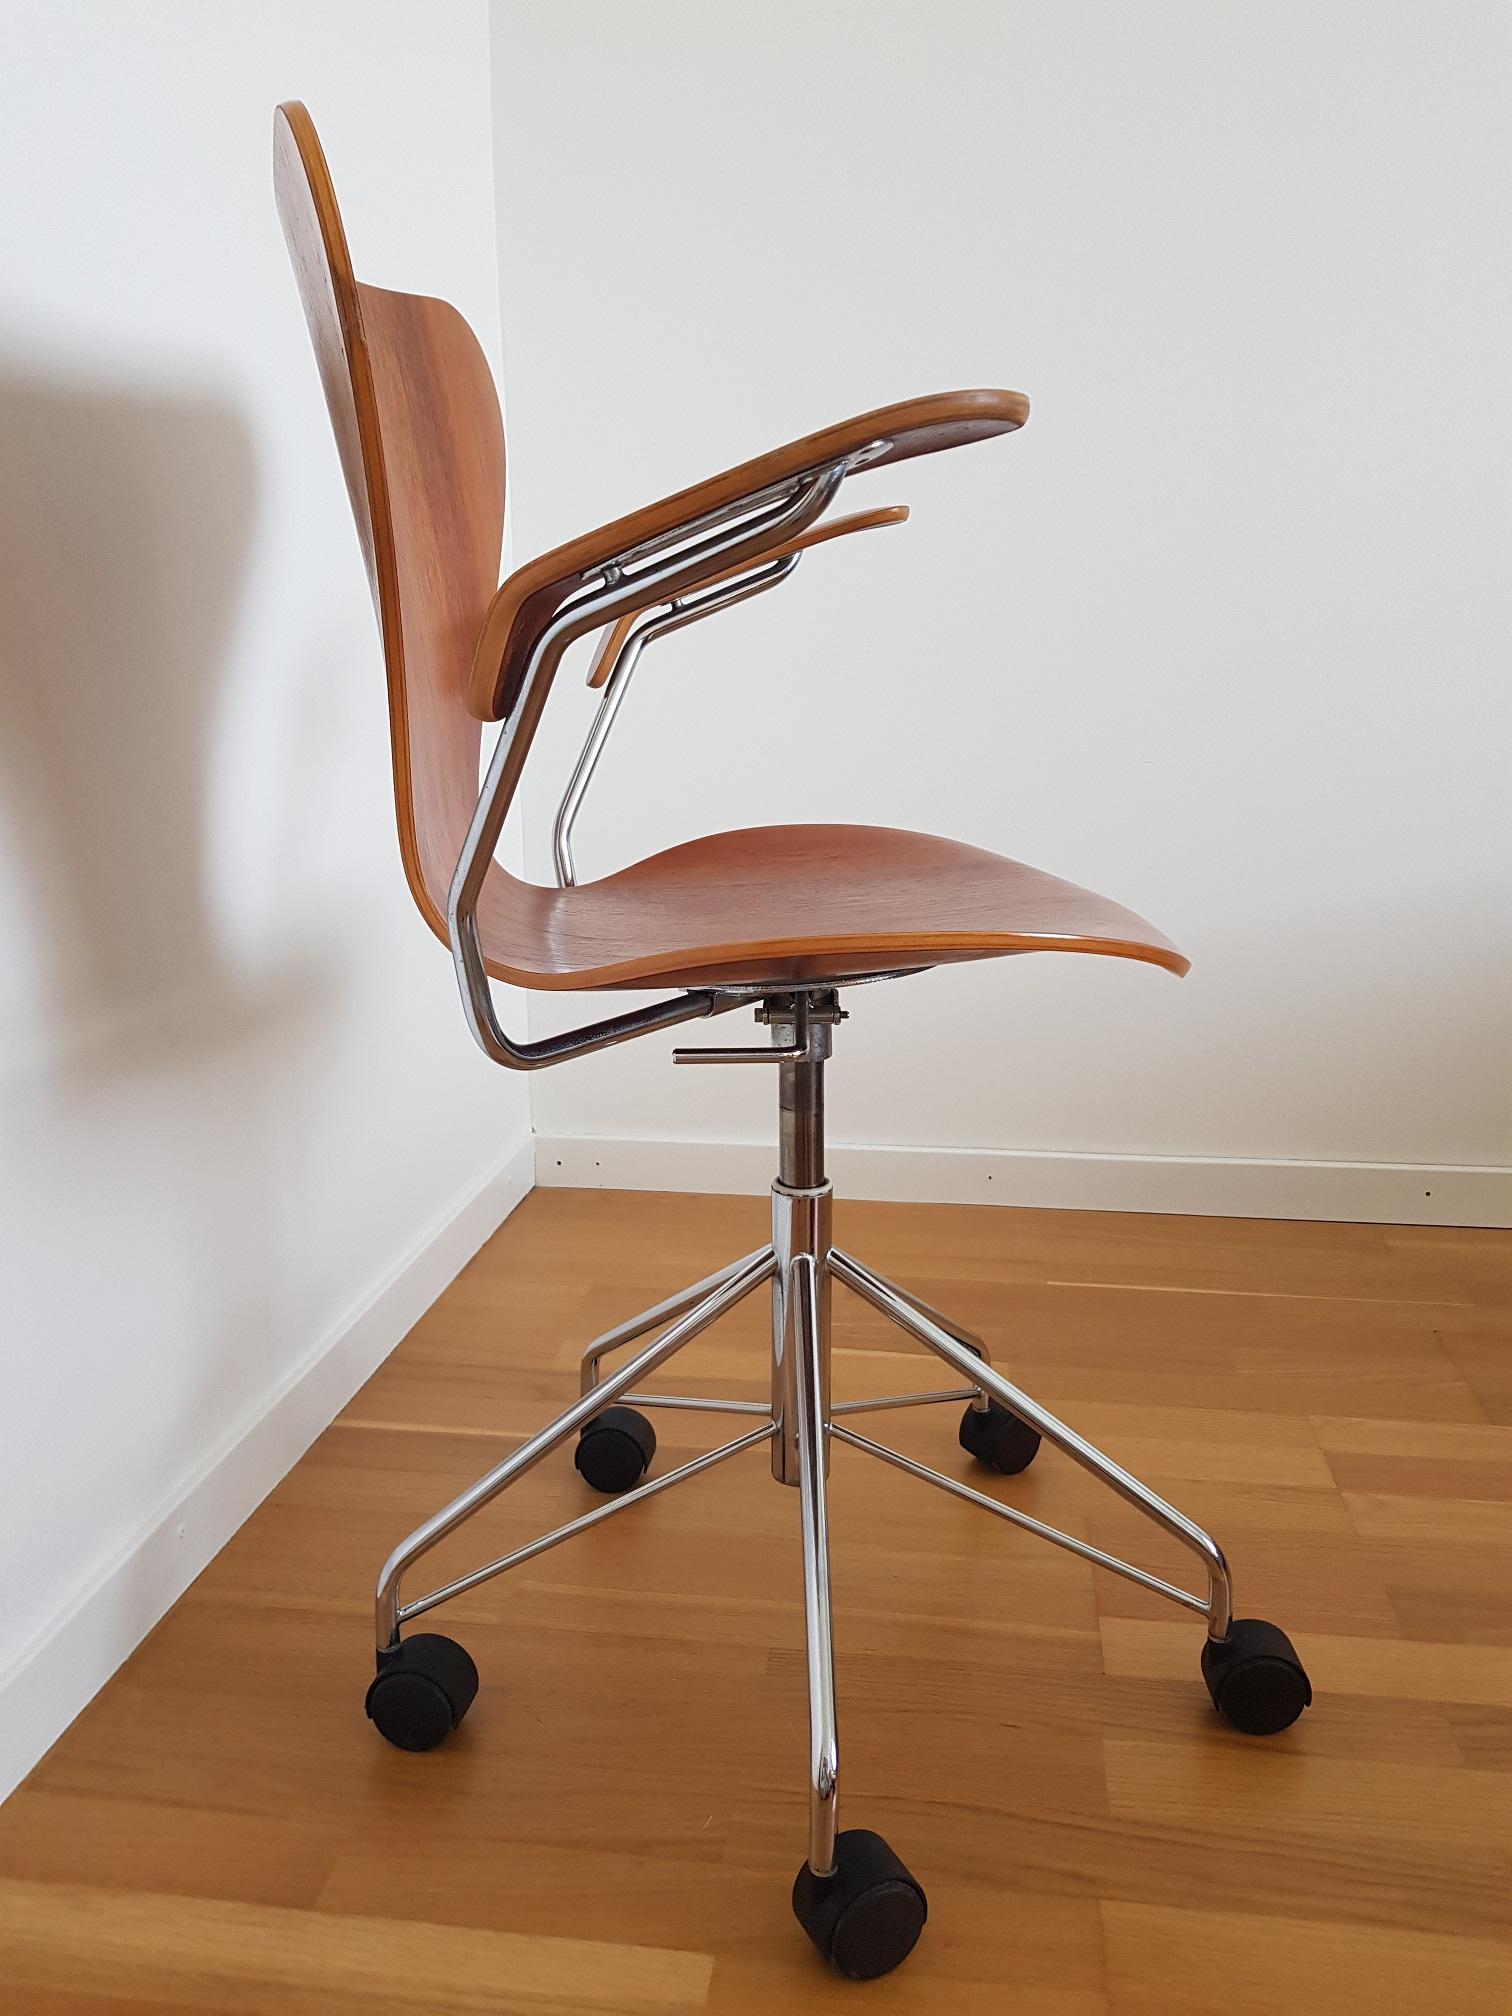 Danish Series 7 Teak Desk Chair Model 3217 by Arne Jacobsen for Fritz Hansen